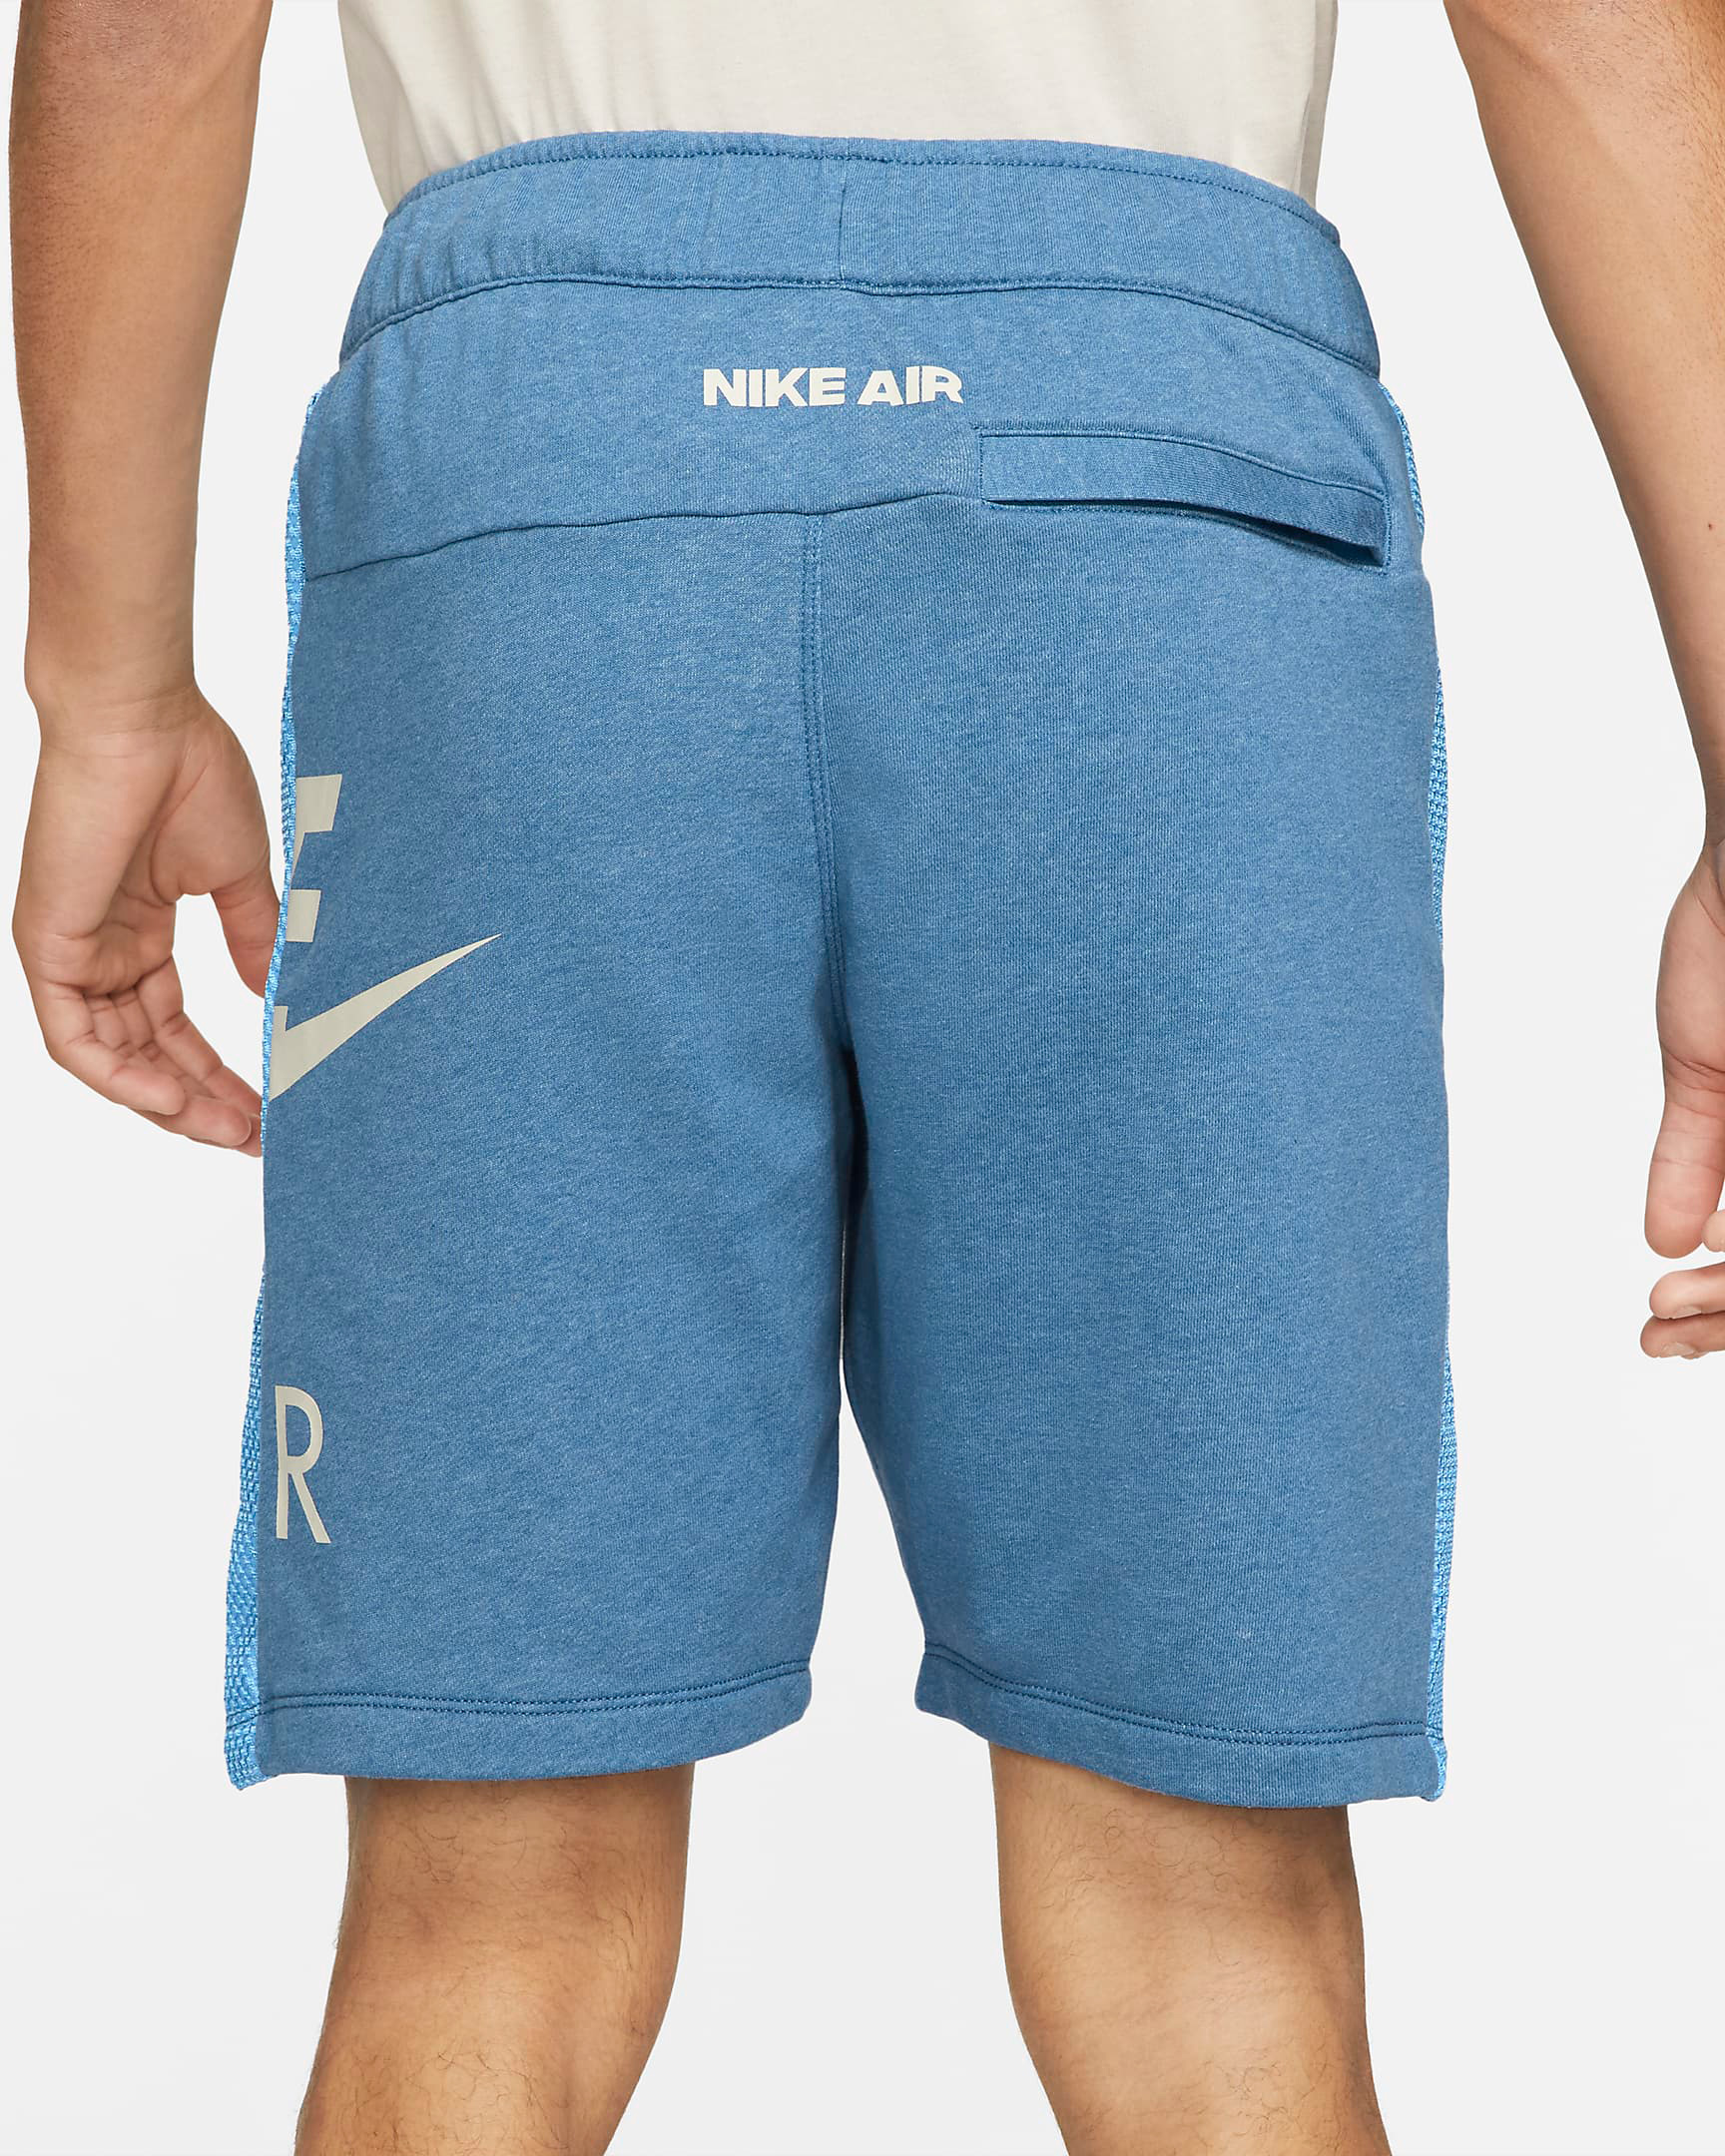 nike-air-shorts-dark-marina-blue-university-blue-2